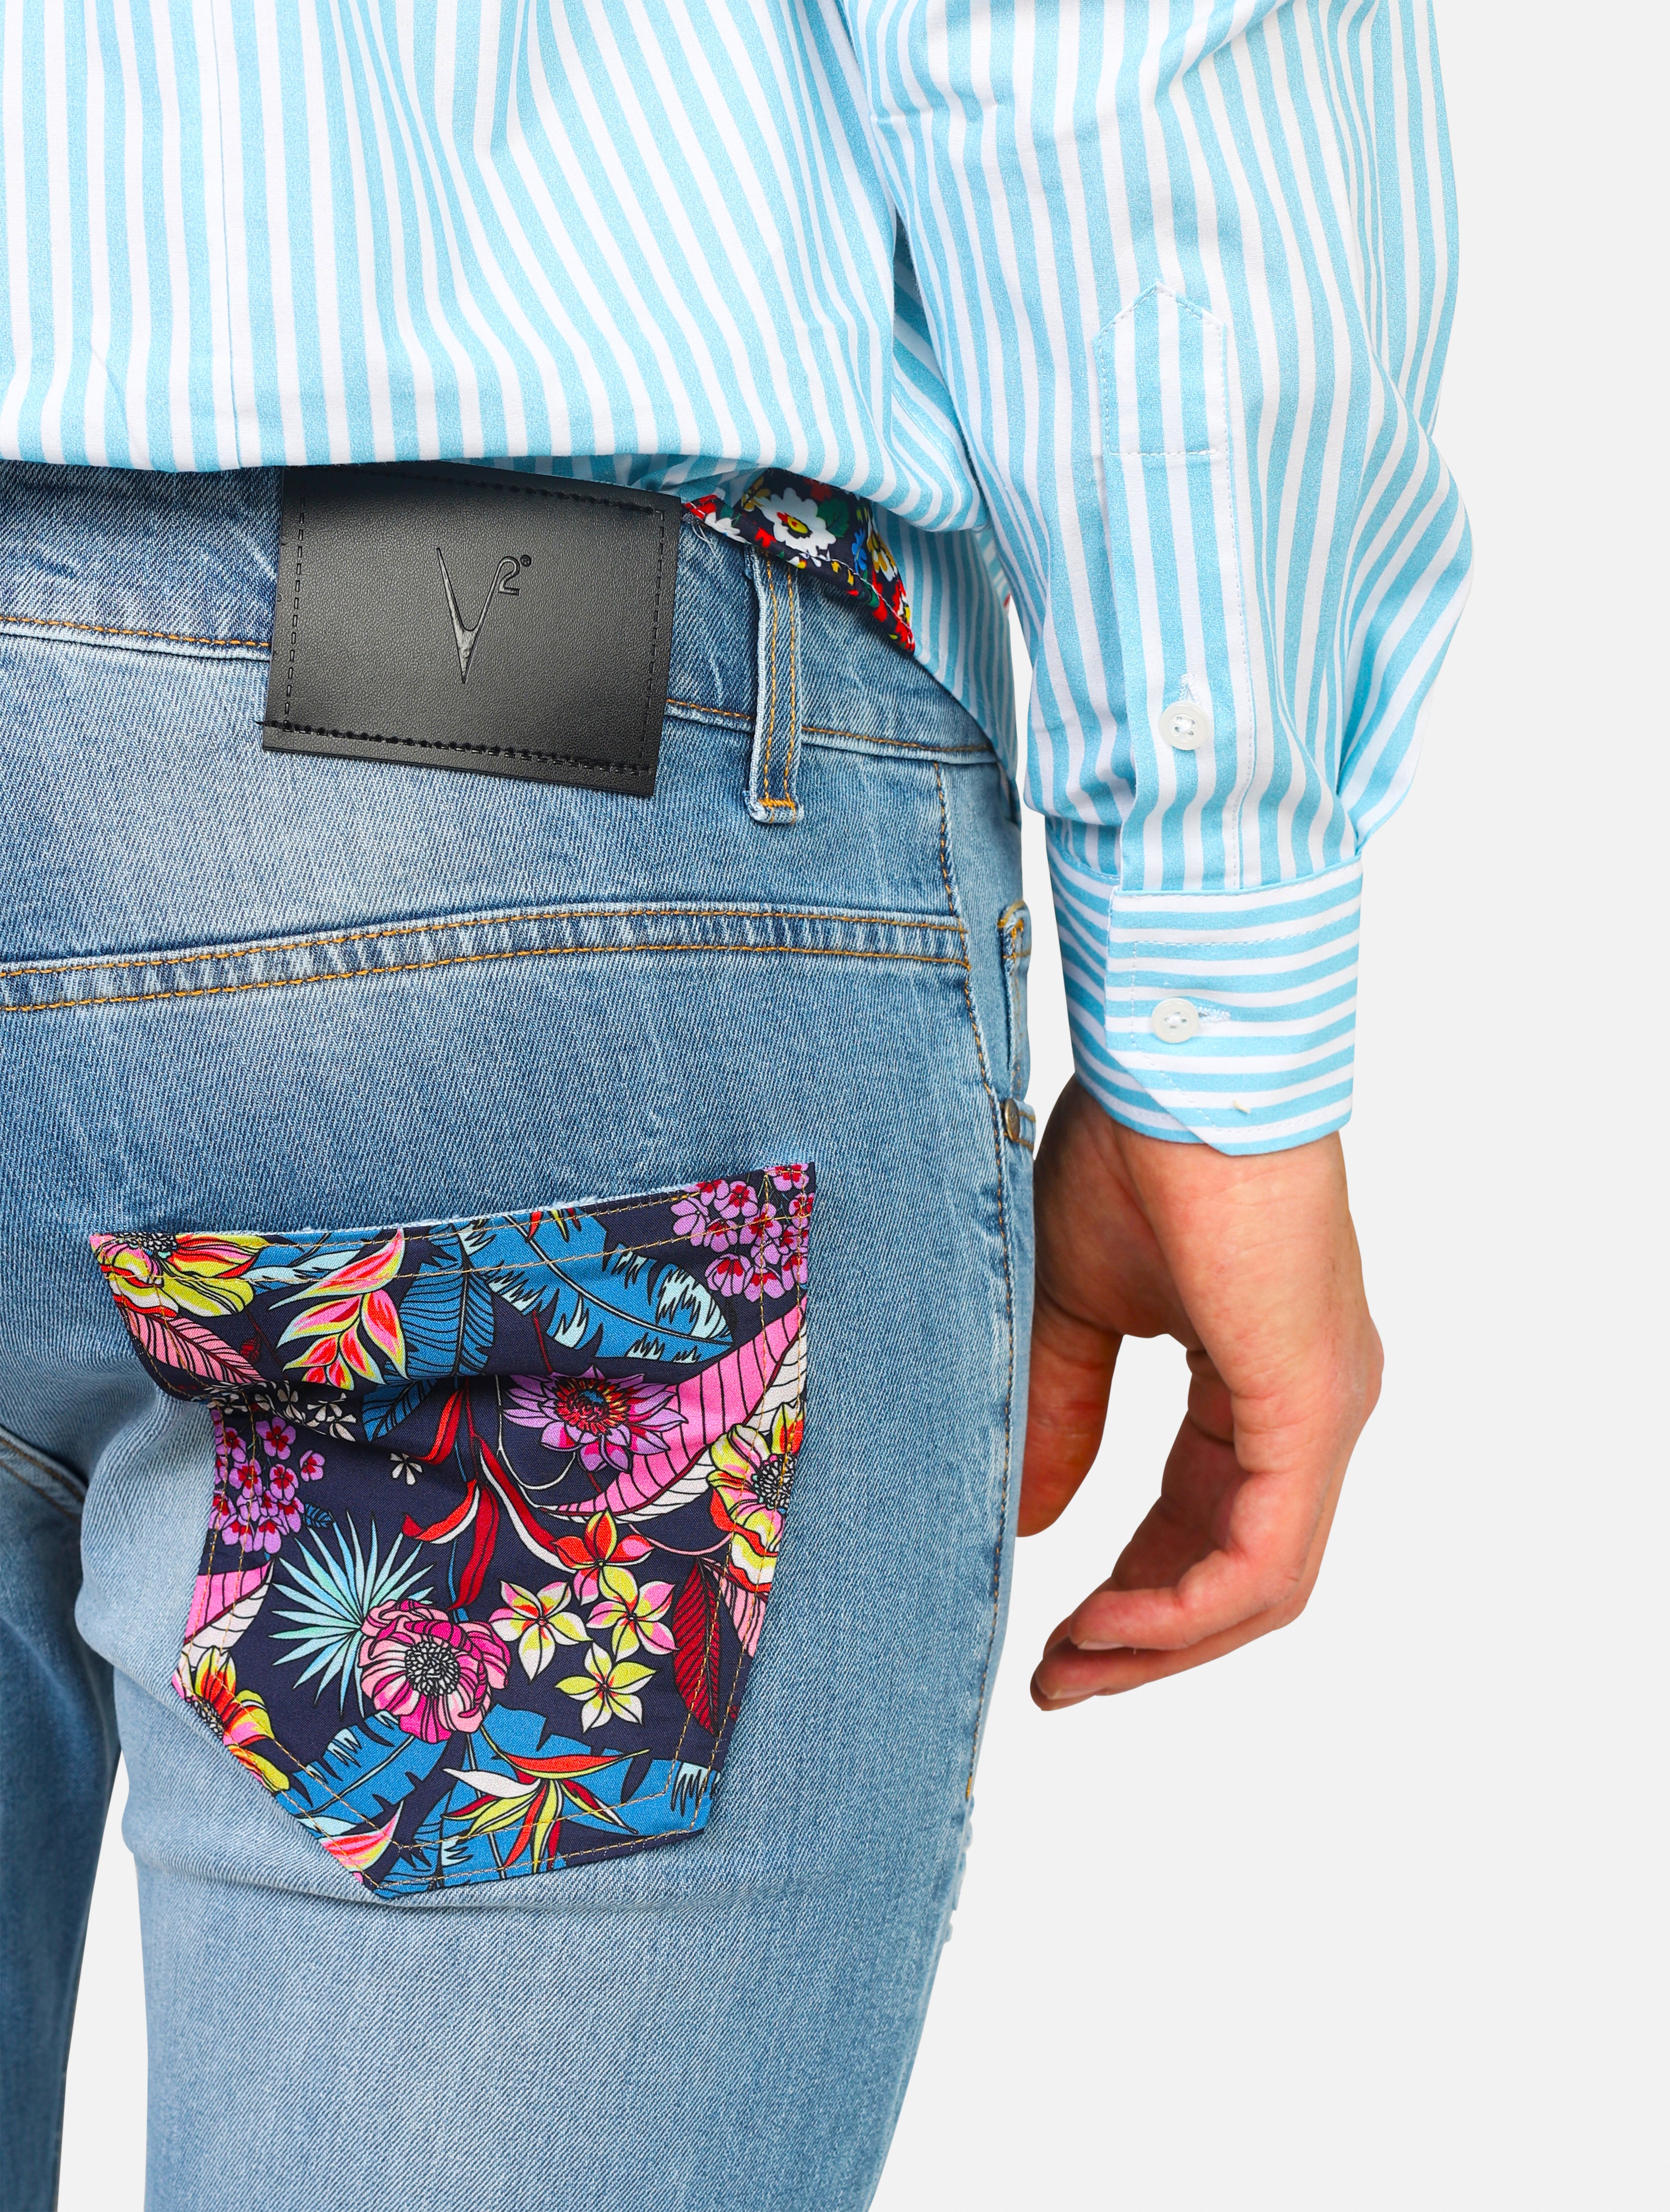 Jeans 5 tasche con tasca patch posteriore in fantasia, piccole lacerazioni -  denim man  - 4